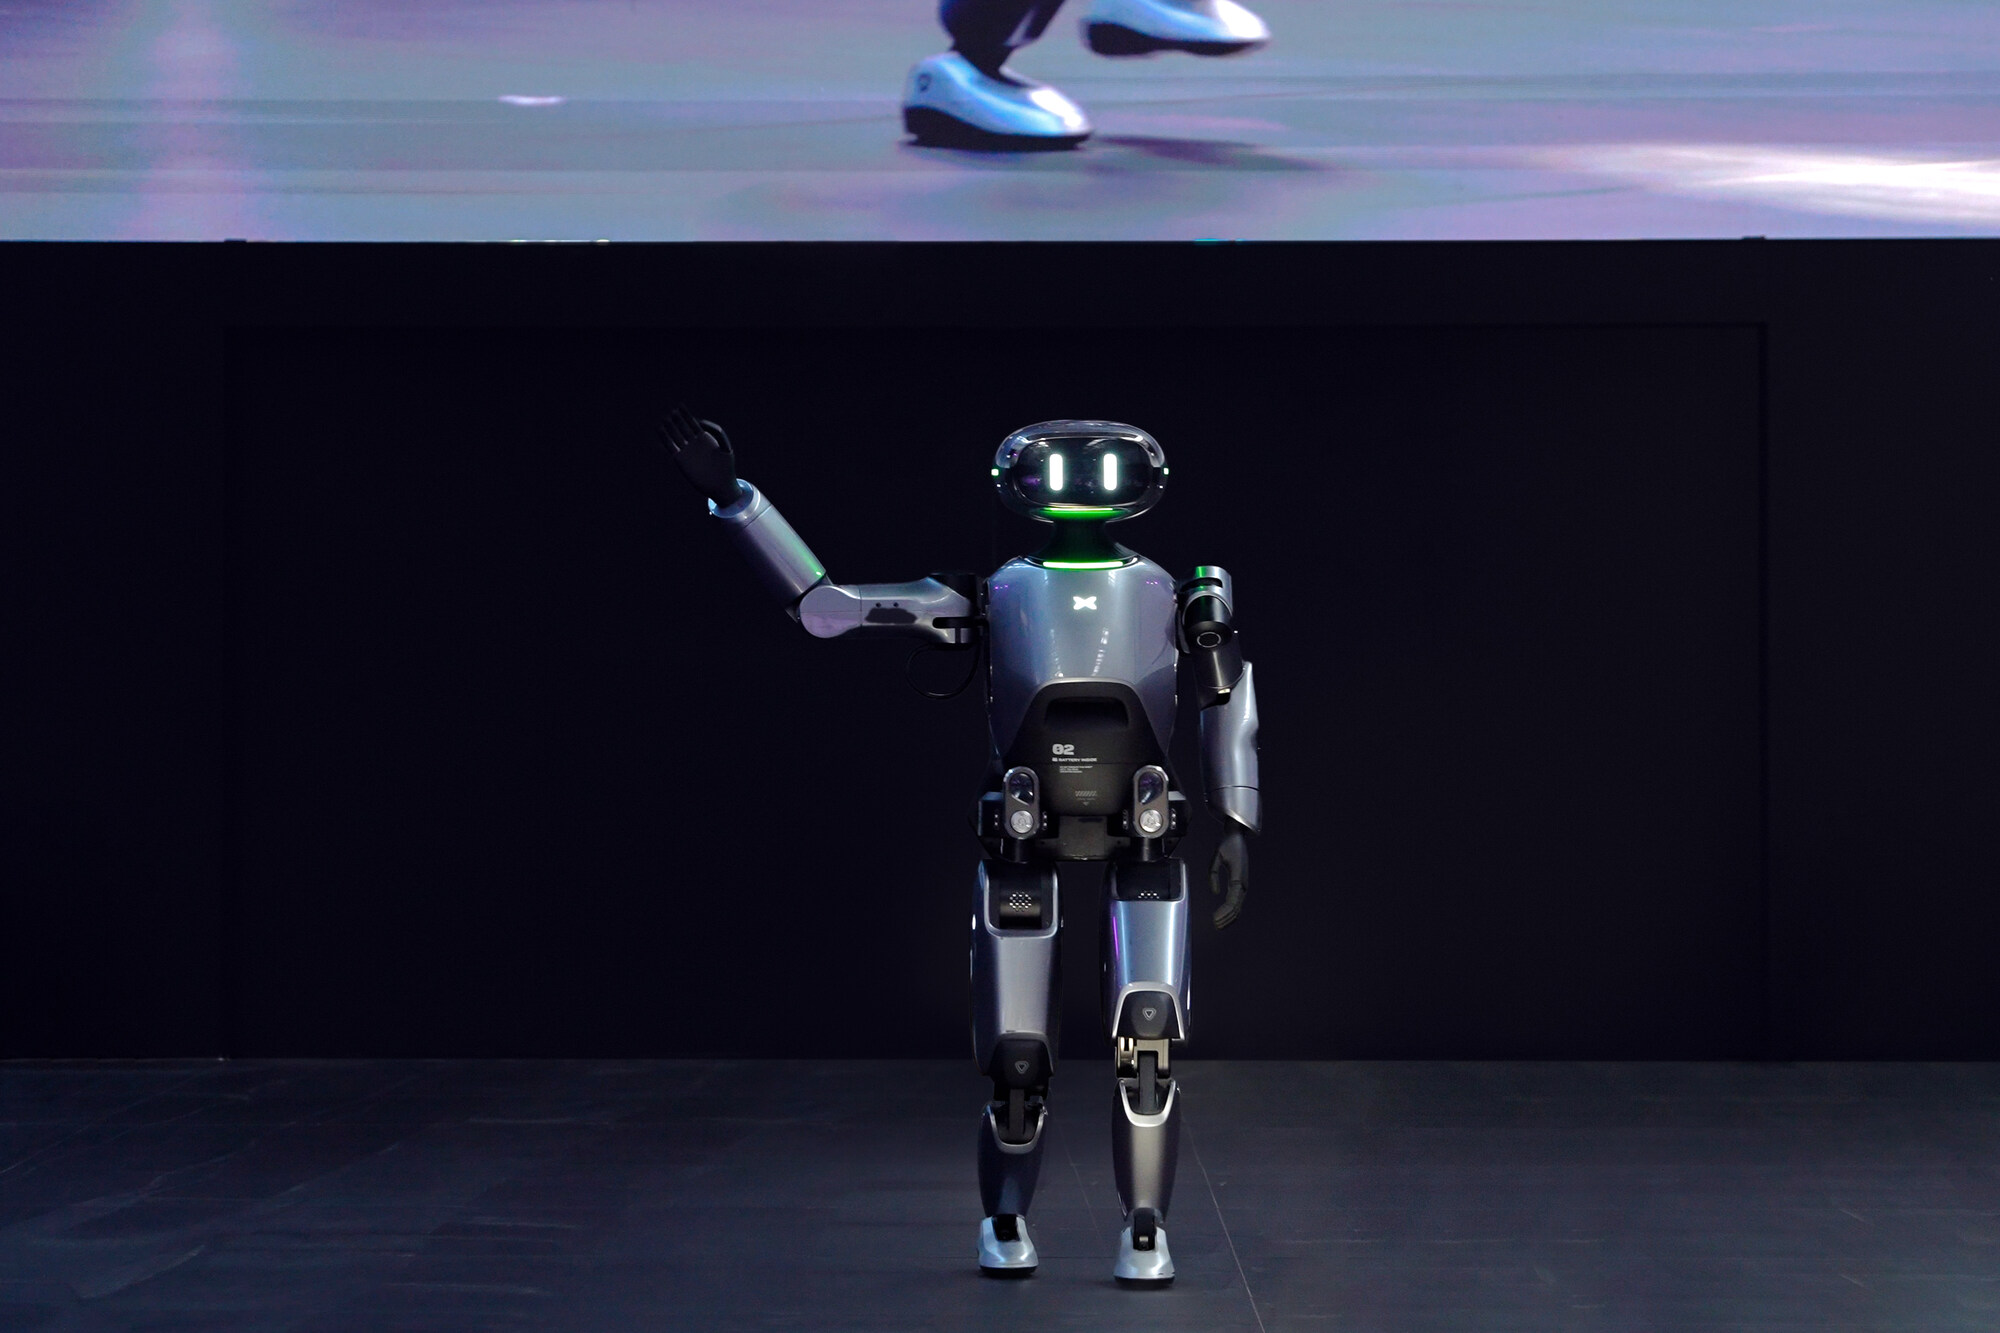 Mobility robot robotics EVs xpeng motors xpev tesla china Optimus